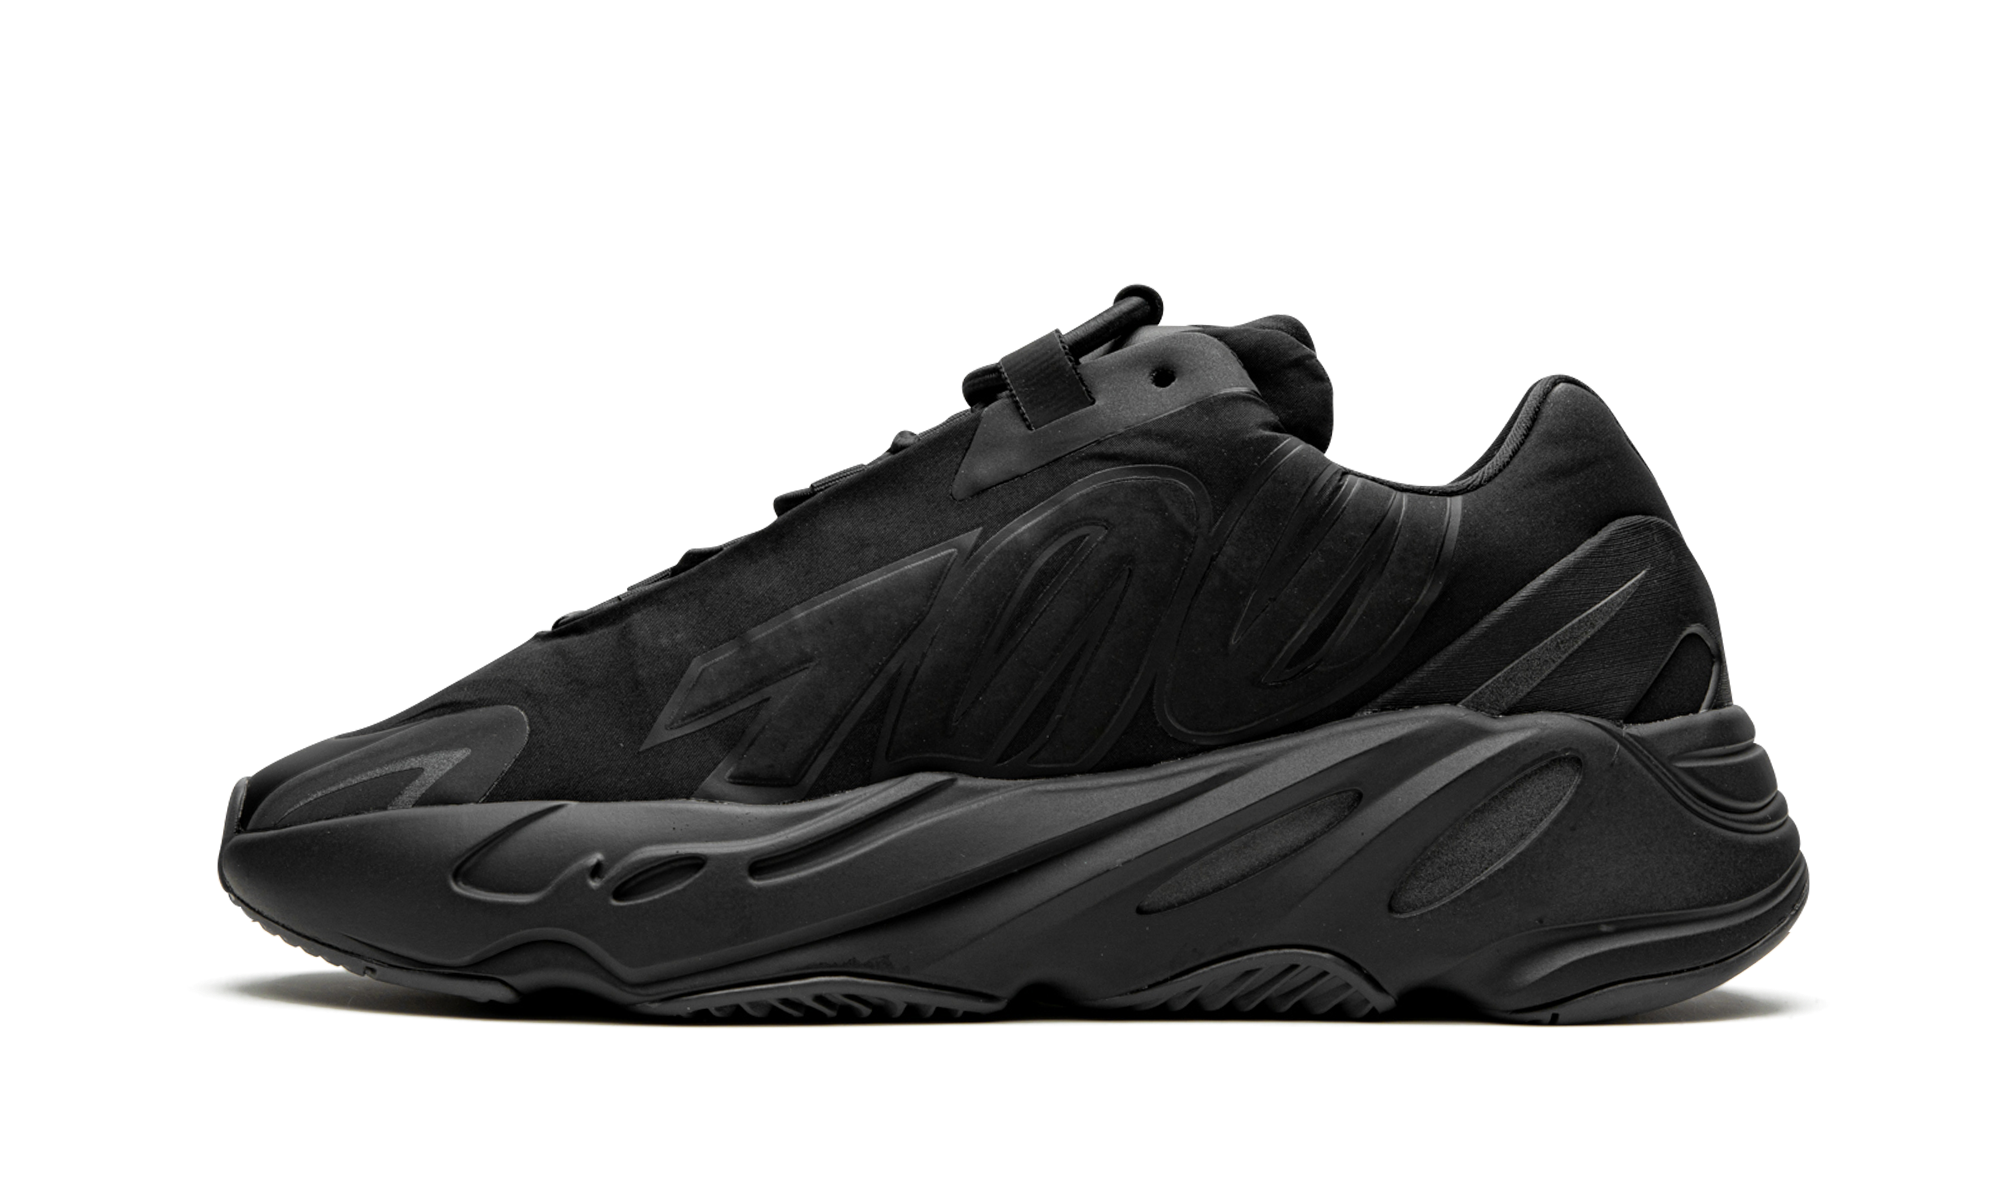 Yeezy Boost 700 MNVN “Triple Black” купить по выгодной цене | Заказать в  магазине лимитированных кроссовок «Grailshop»